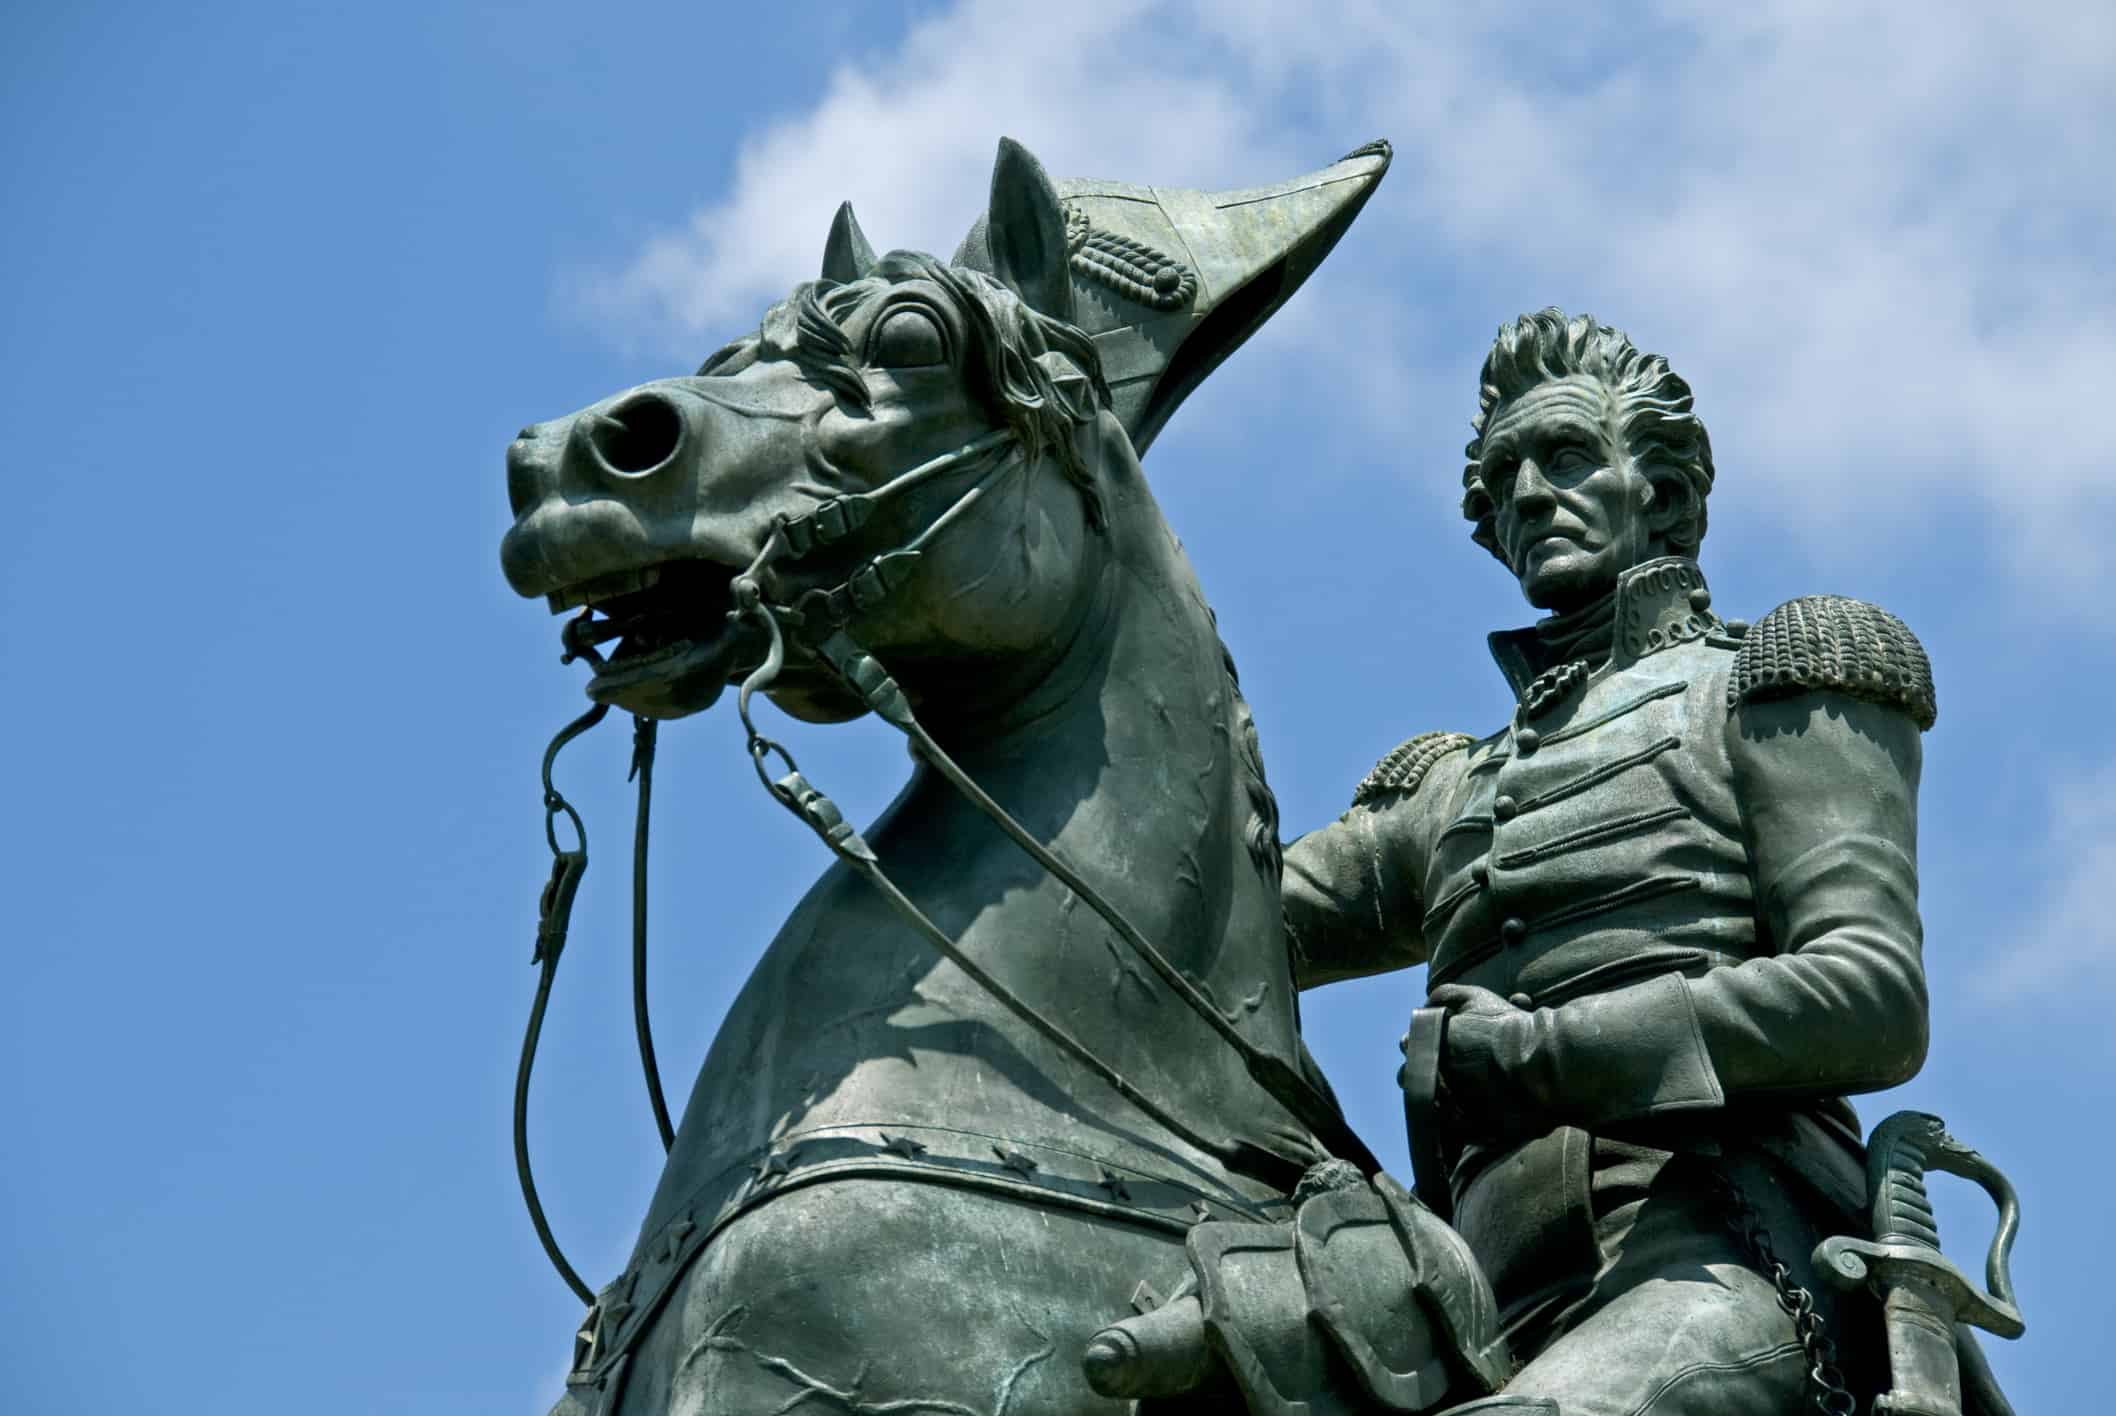 Andrew Jackson Statue